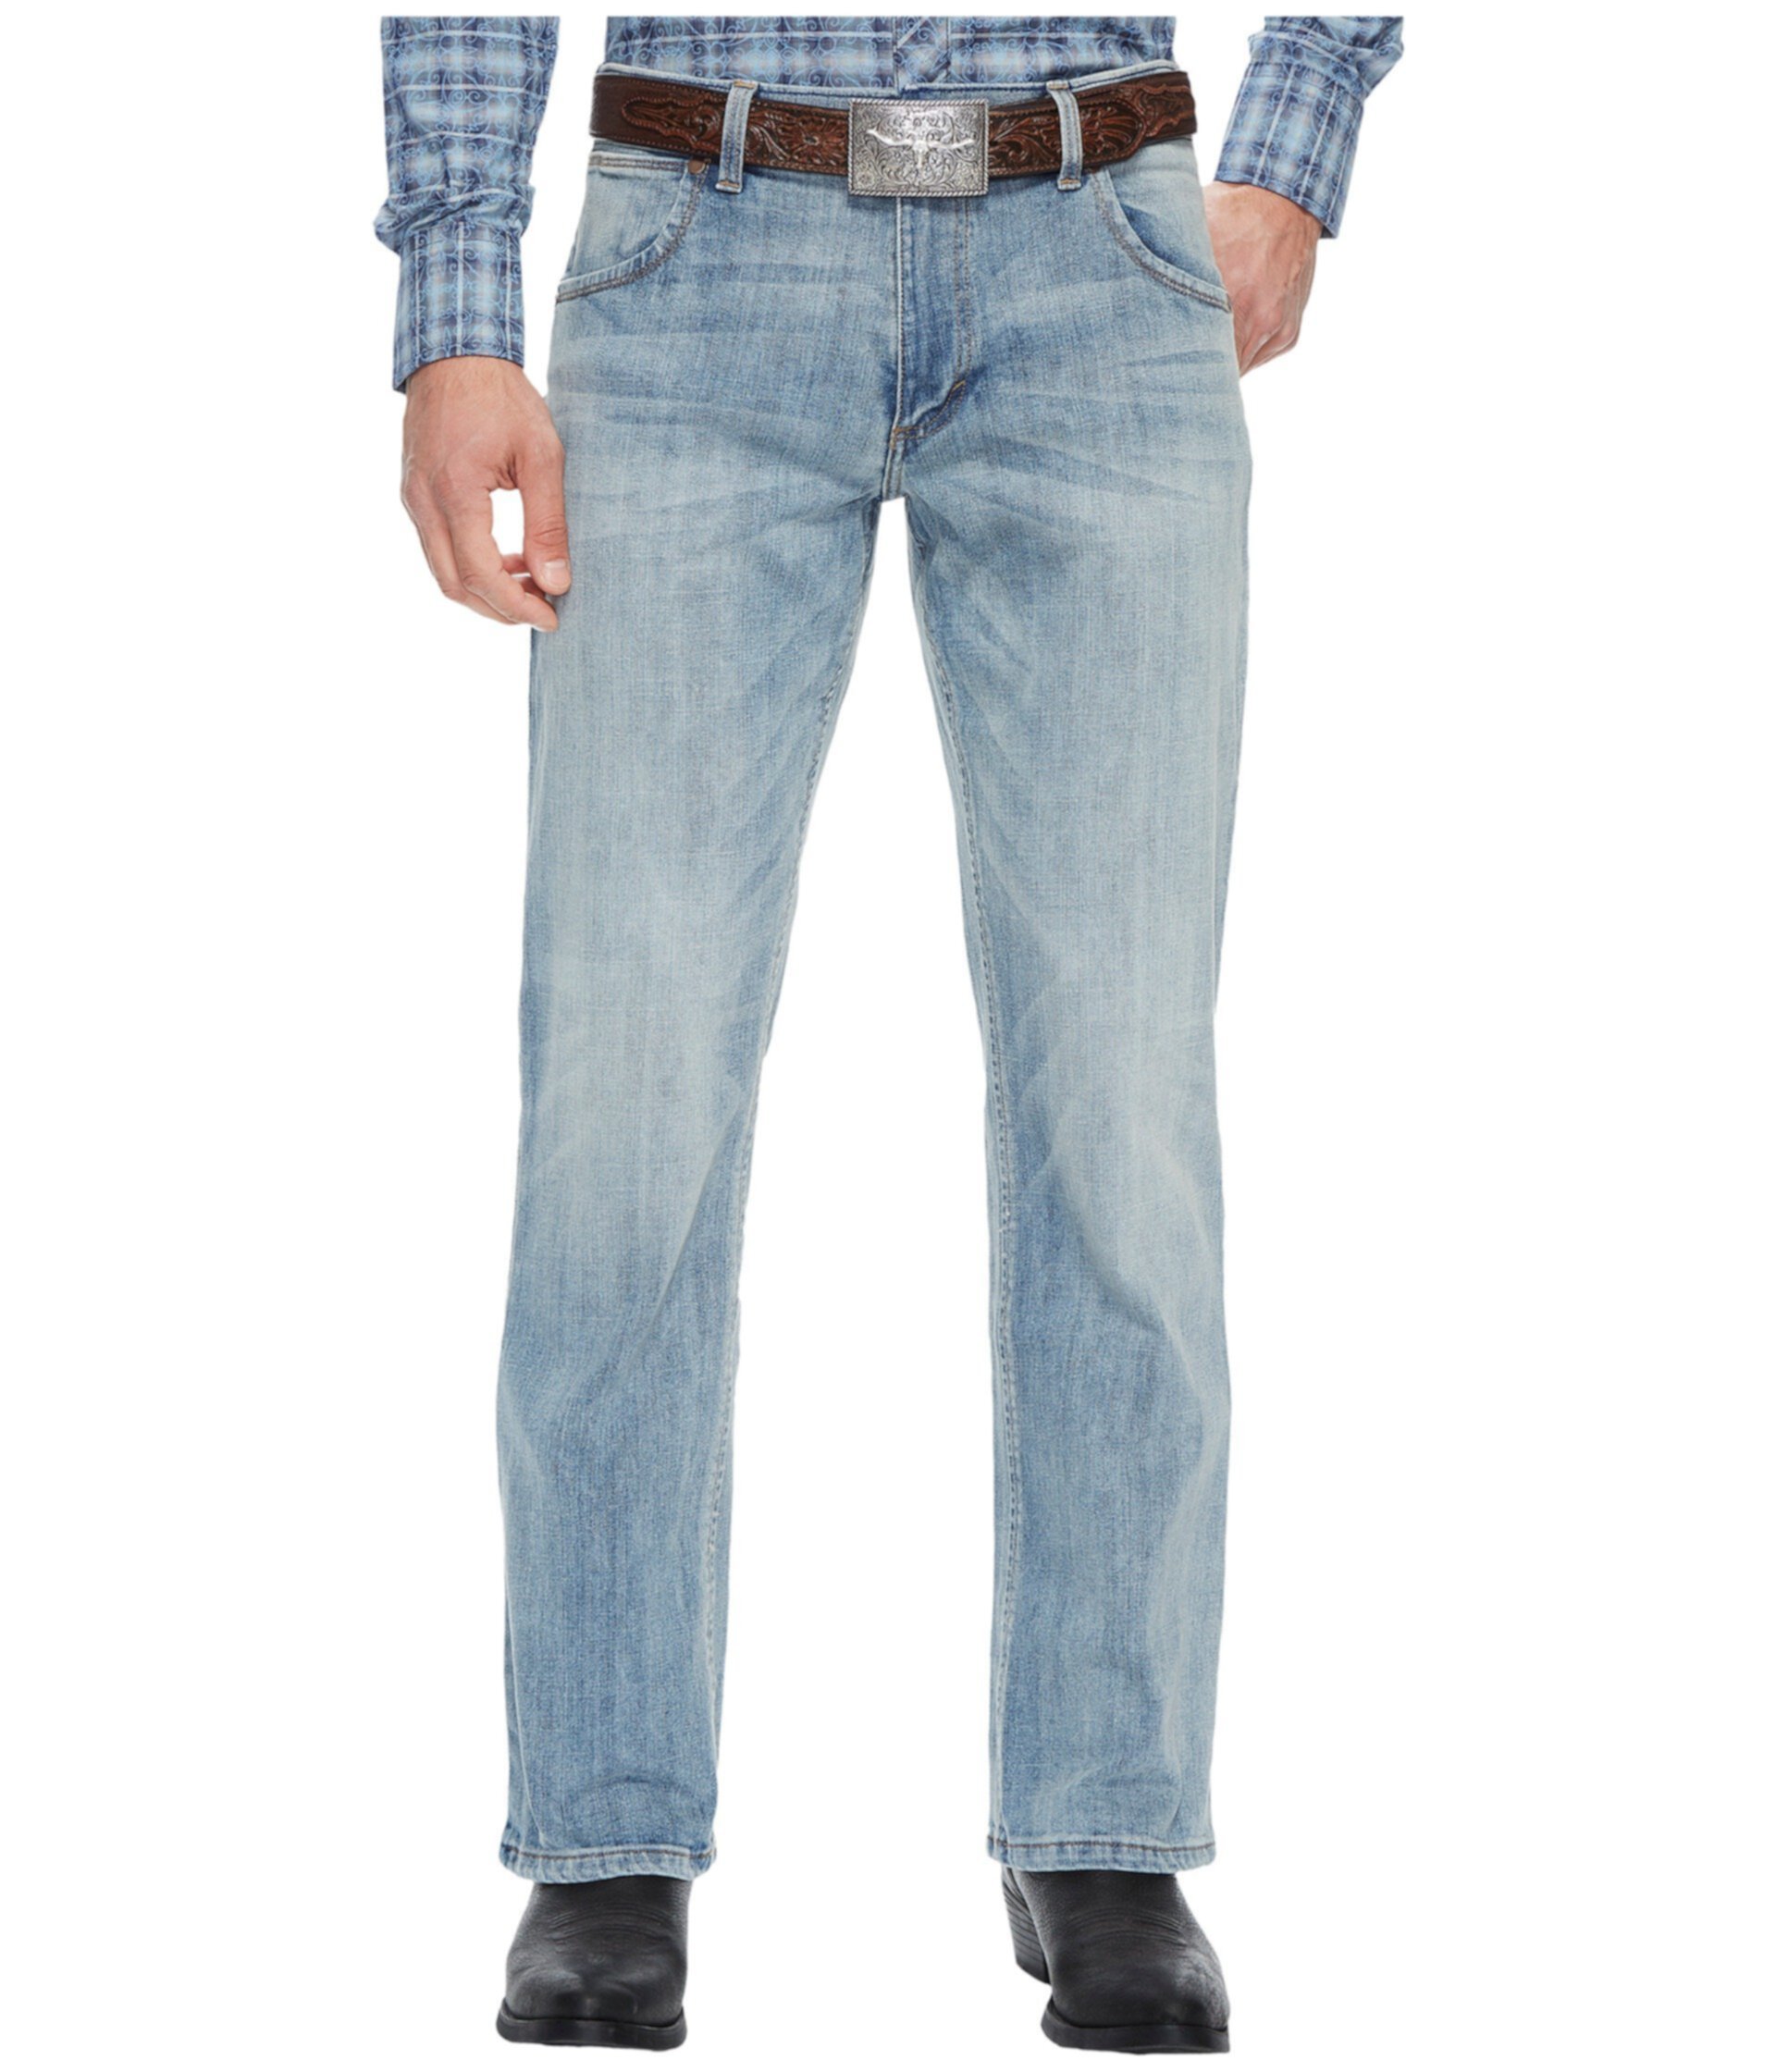 Узкие джинсы Retro Slim Boot от Wrangler для мужчин Wrangler